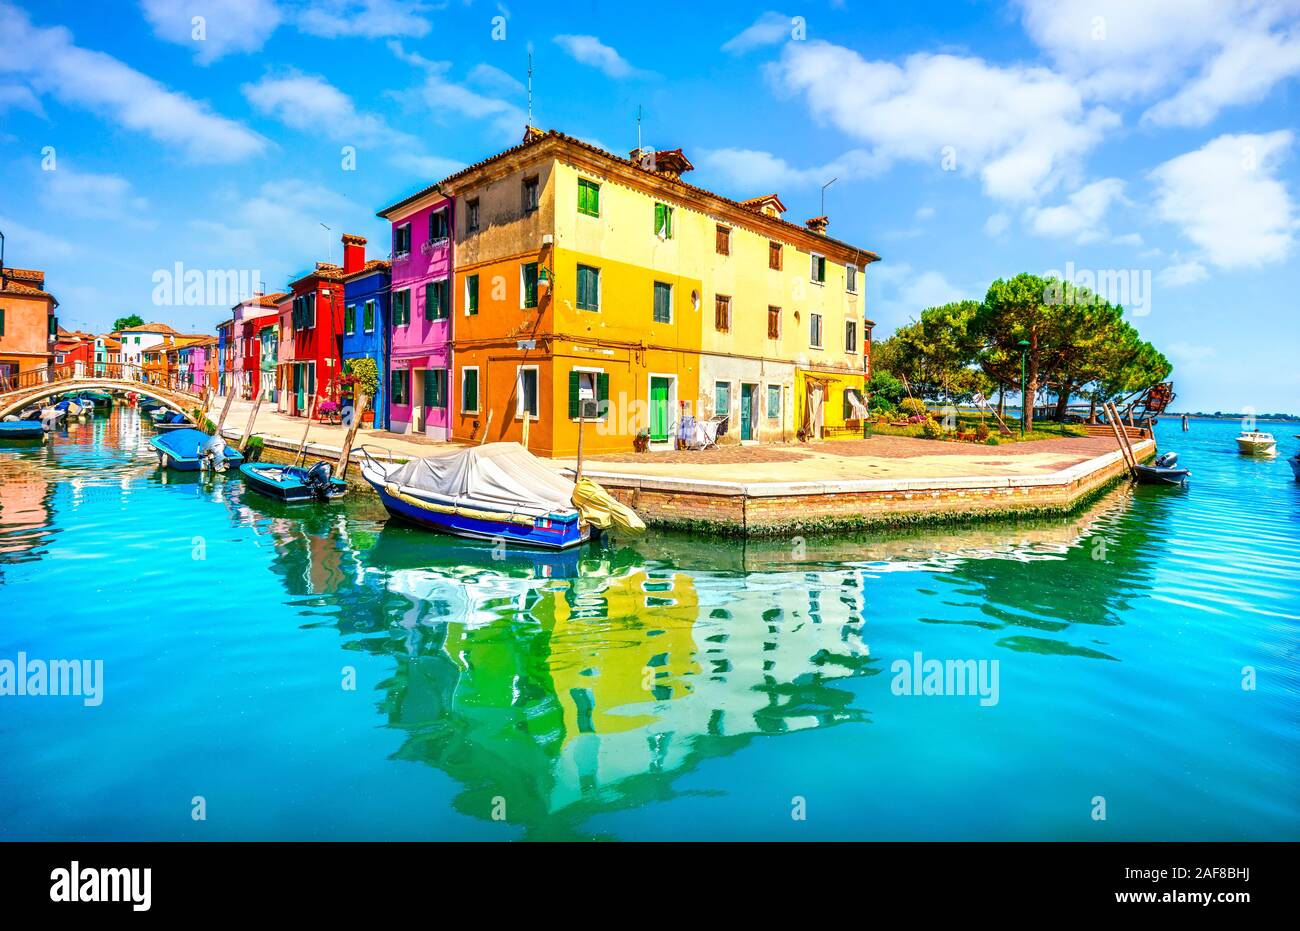 Histórico de Venecia, la isla de Burano, canal y coloridas casas y barcos, de Italia, de Europa. Foto de stock